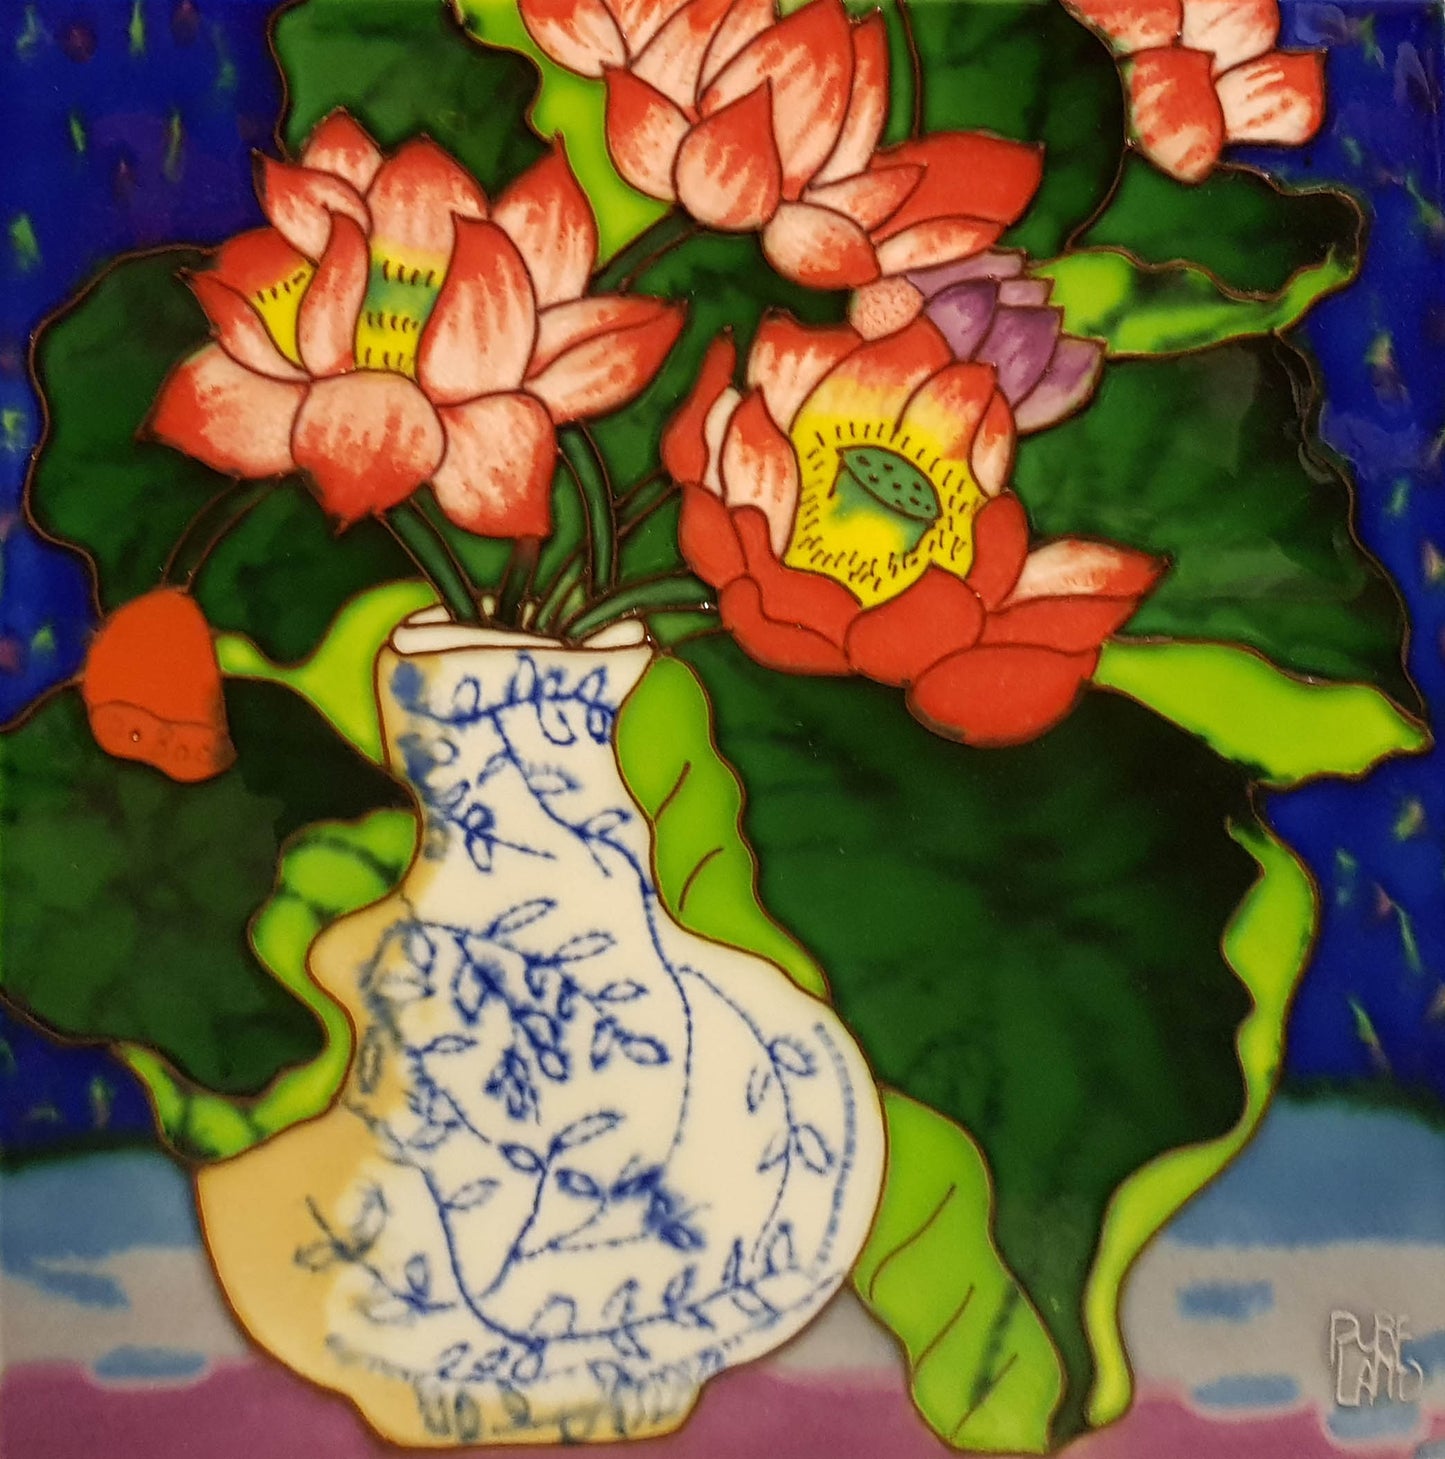 3552 Blue Vase with Lotus Flowers 30cm x 30cm Pureland Ceramic Tile